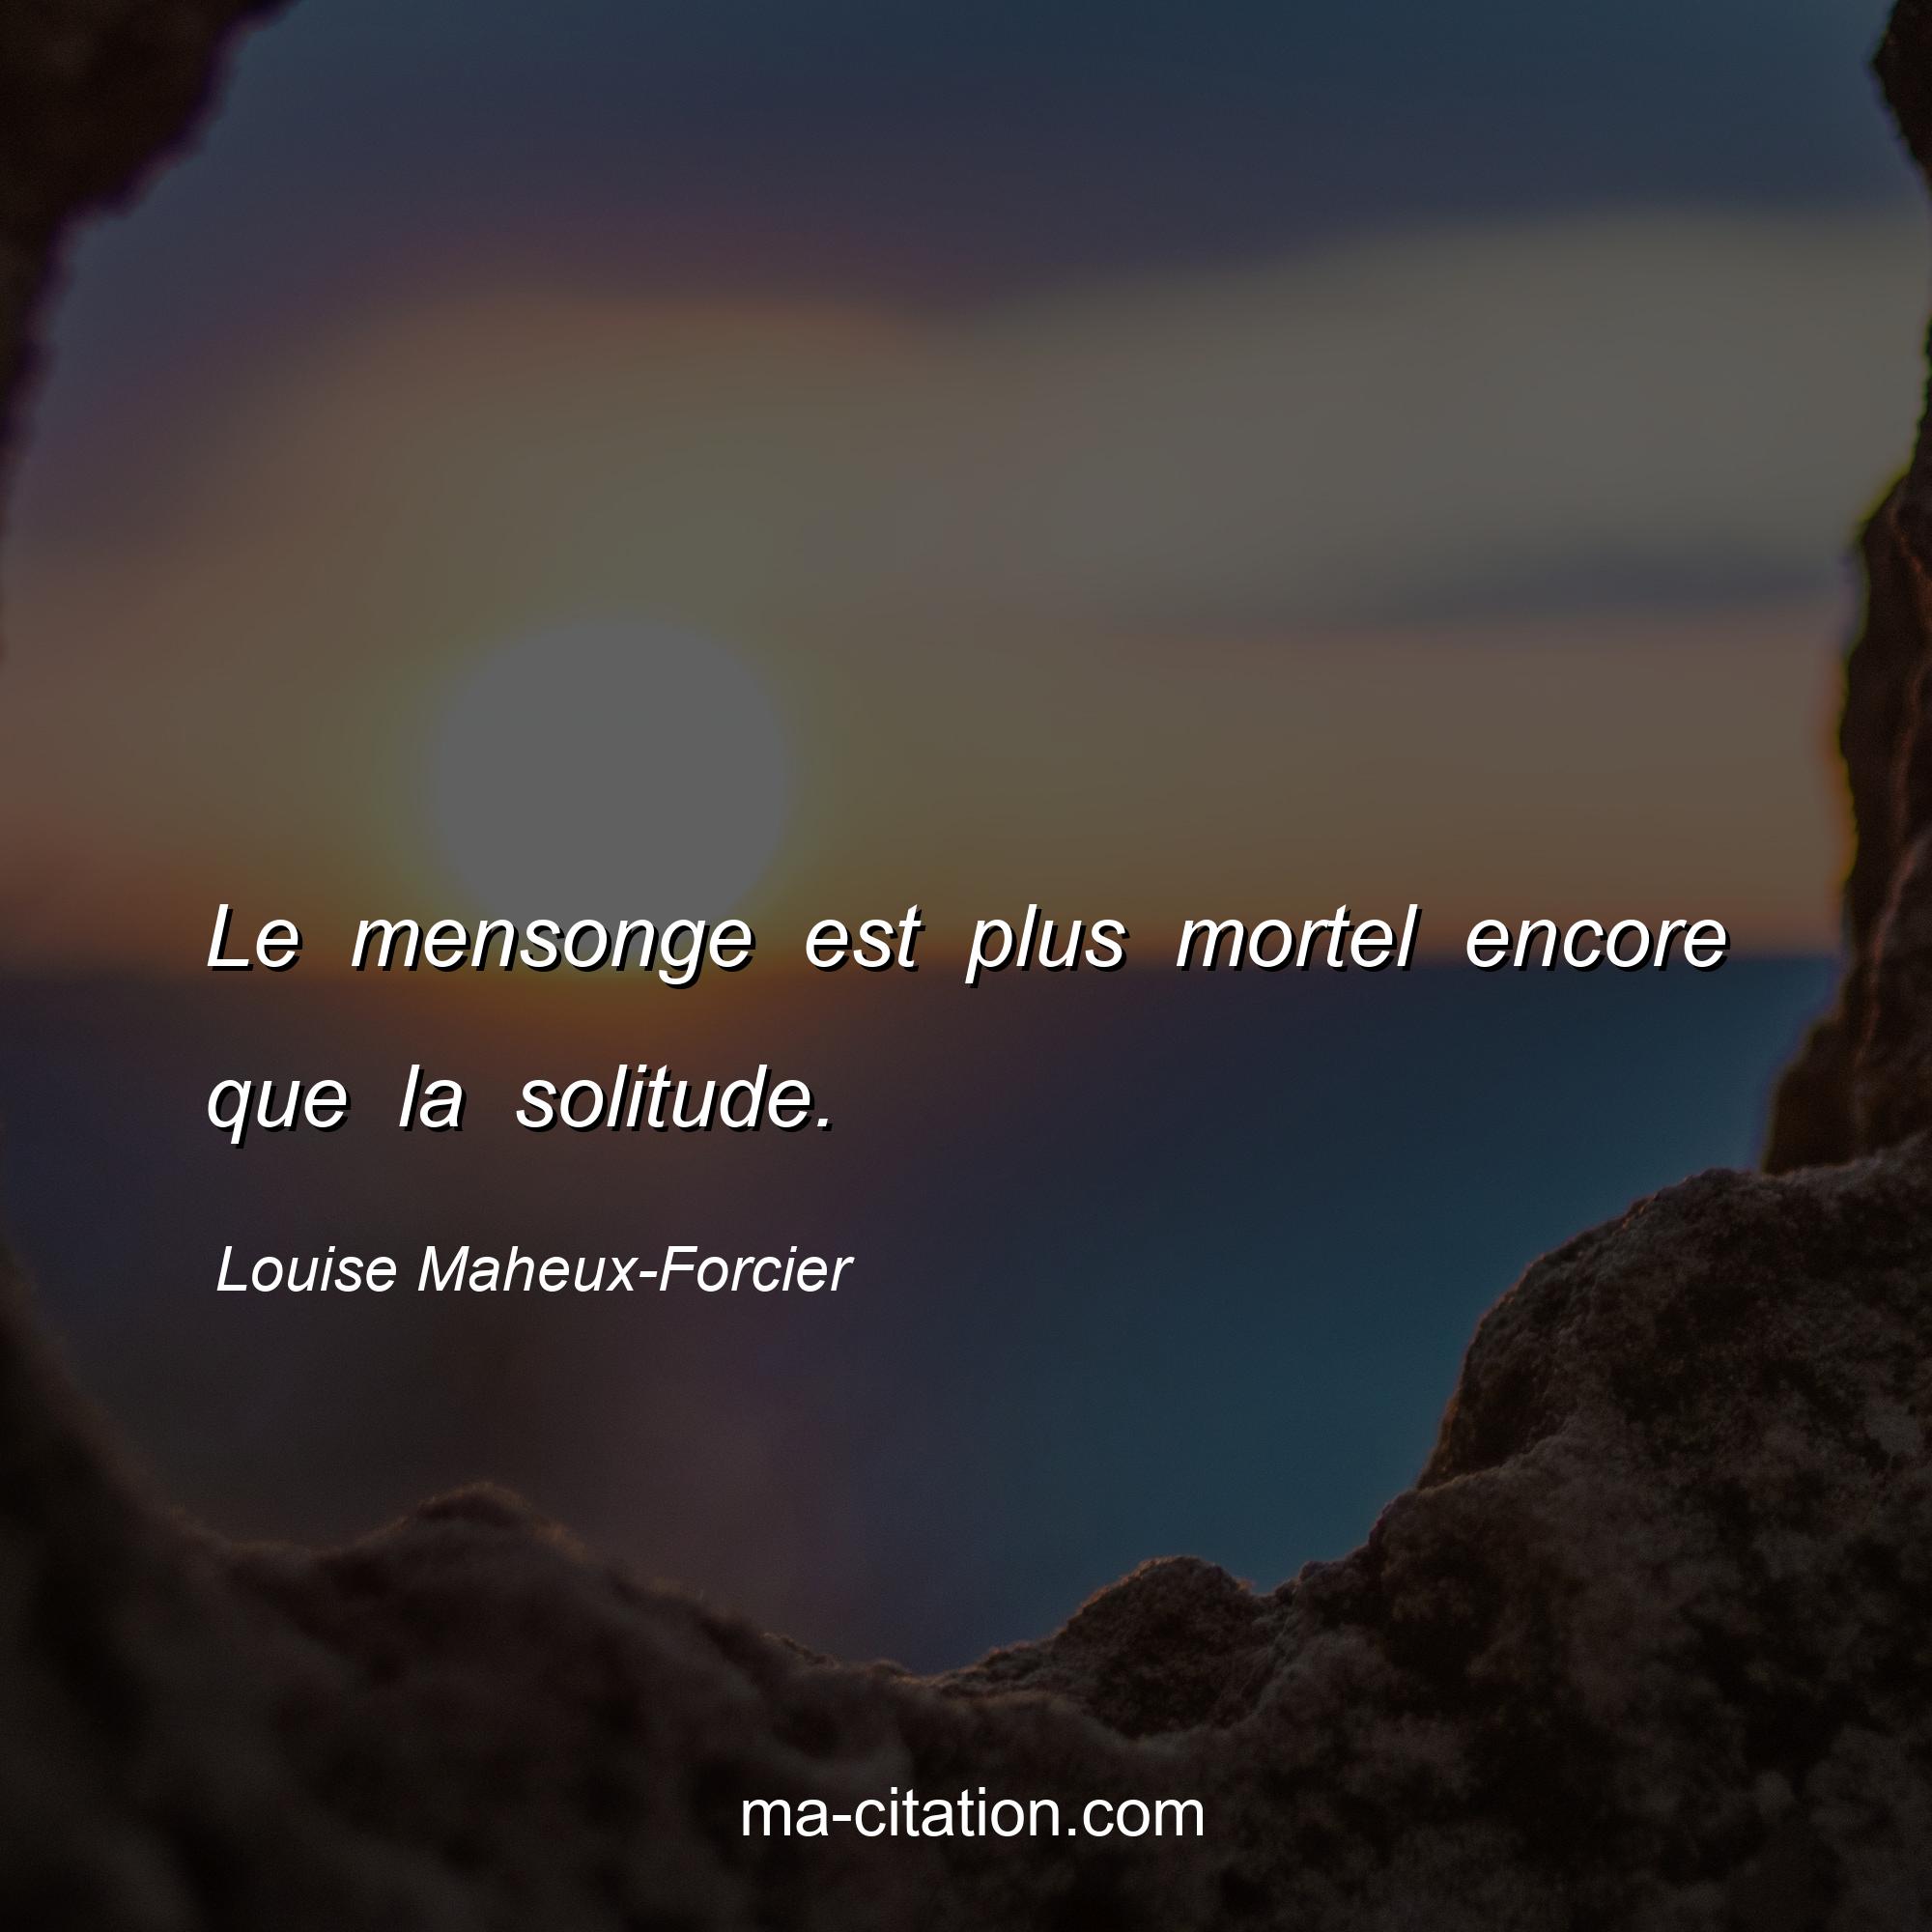 Louise Maheux-Forcier : Le mensonge est plus mortel encore que la solitude.